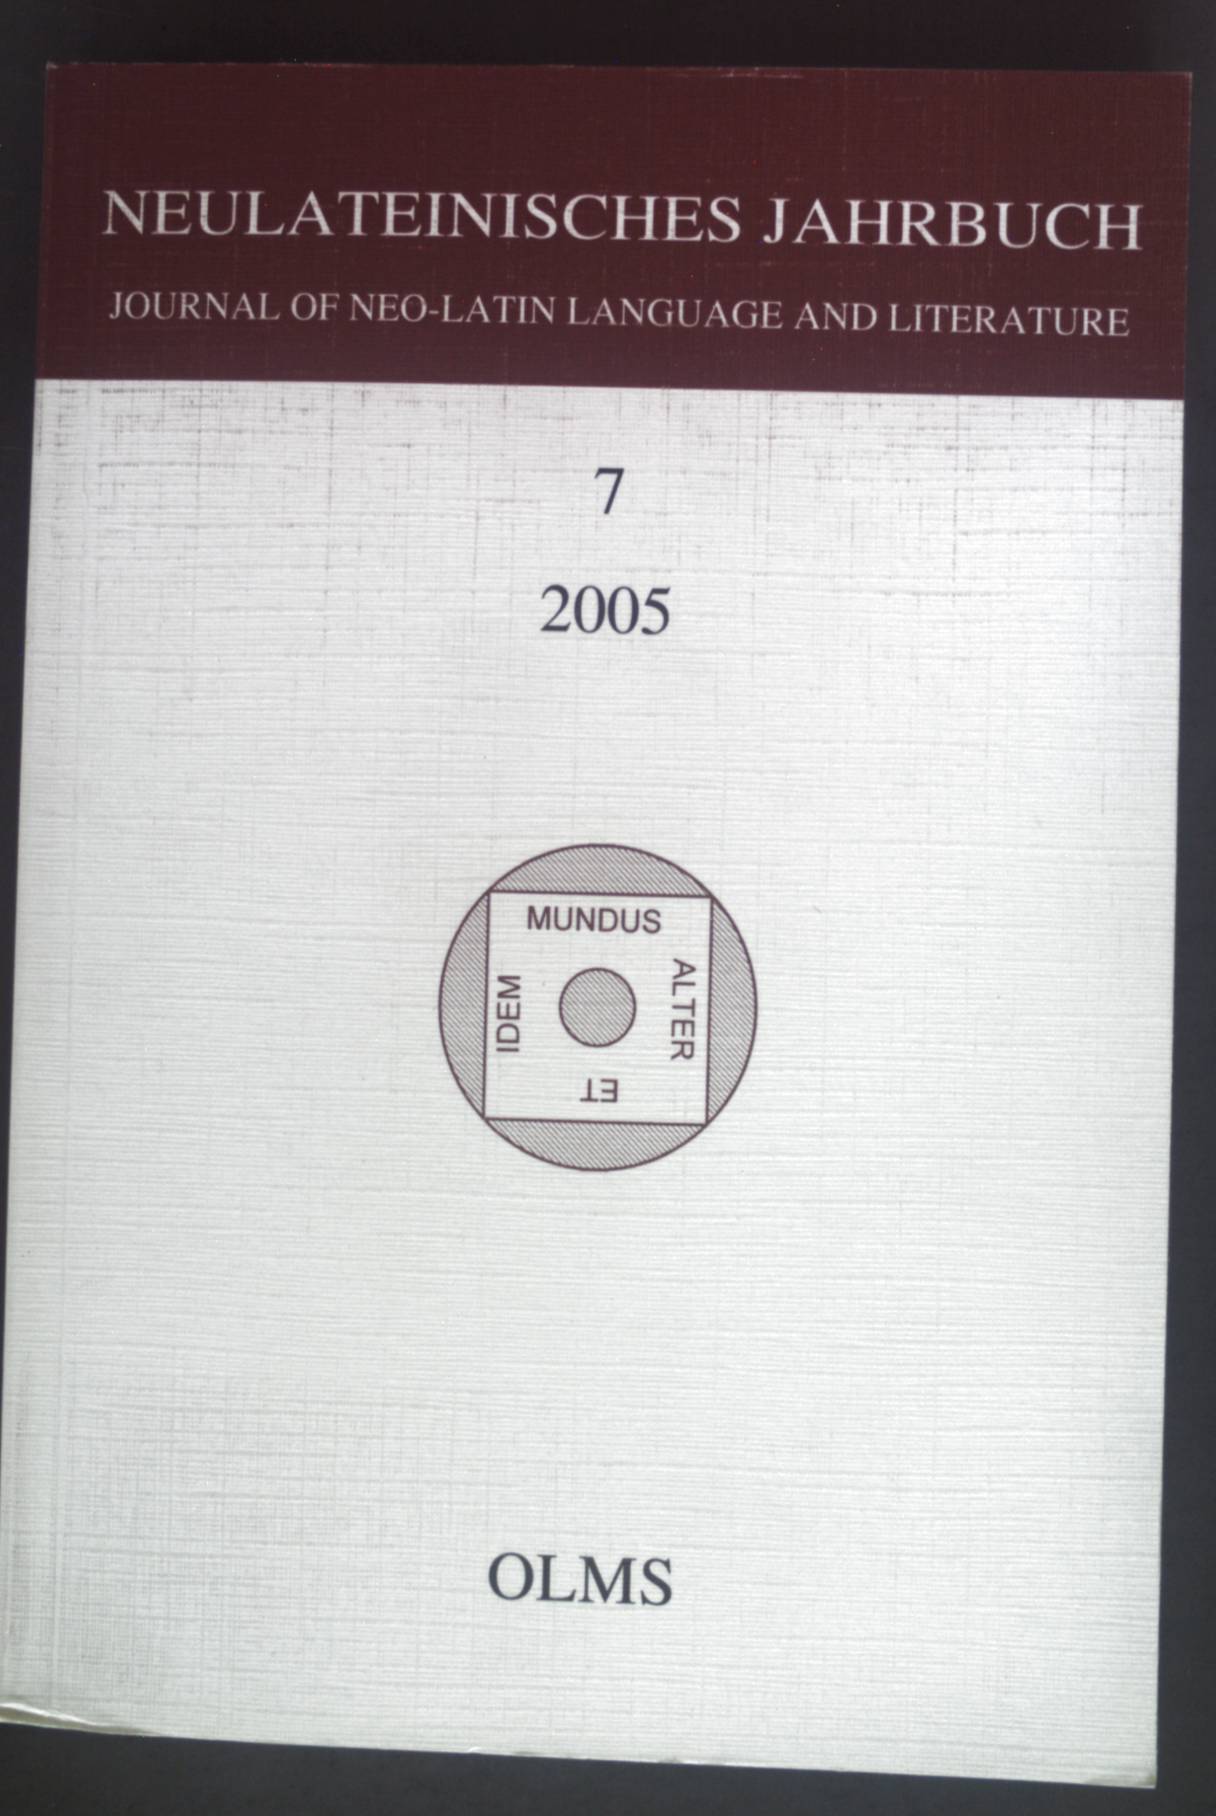 Neulateinisches Jahrbuch: Journal of Neo-Latin Language and Literature. - Neuhausen, Karl August und Marc Laureys